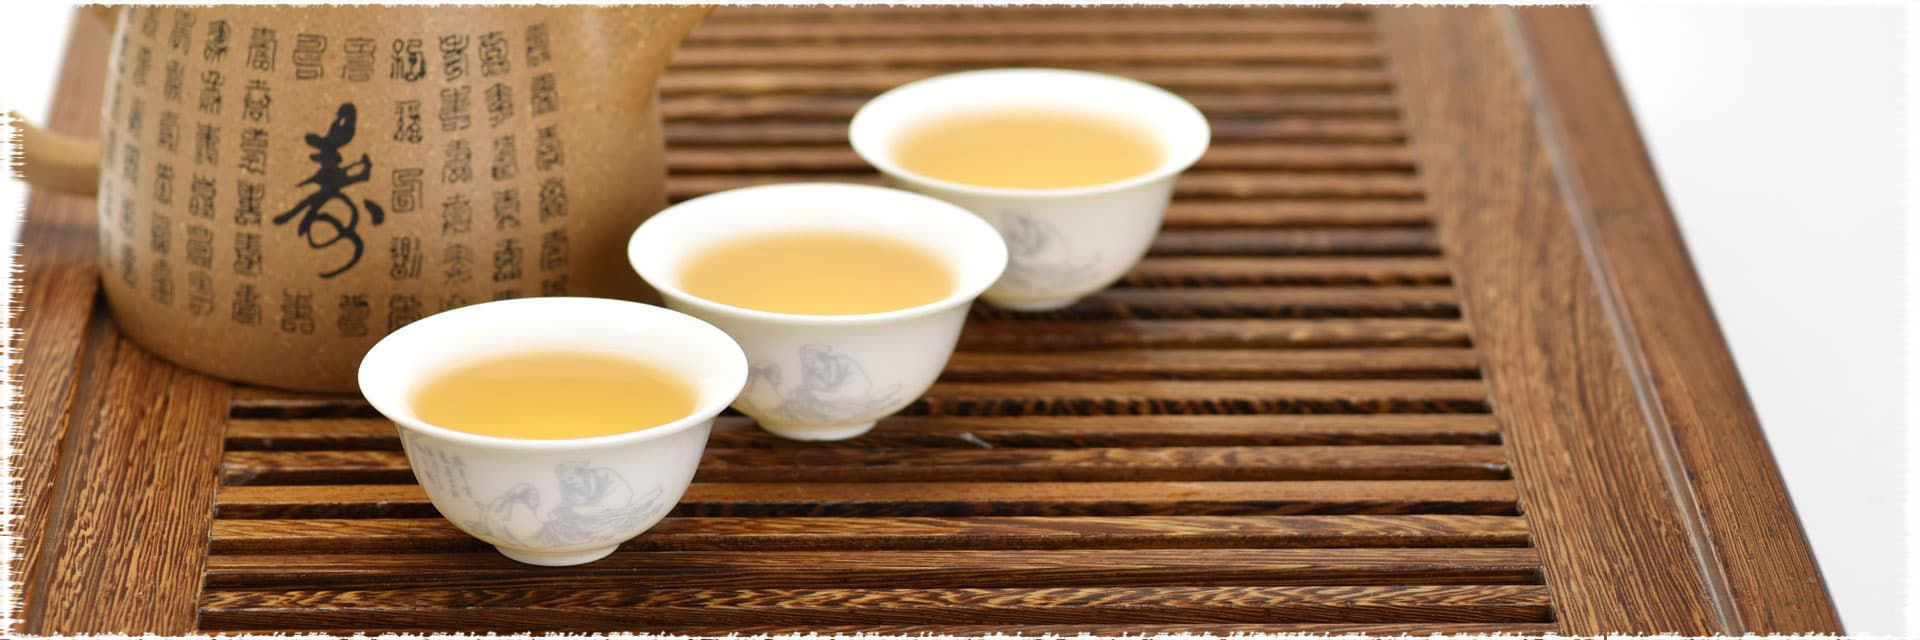 Recettes de thé Pu Erh glacé